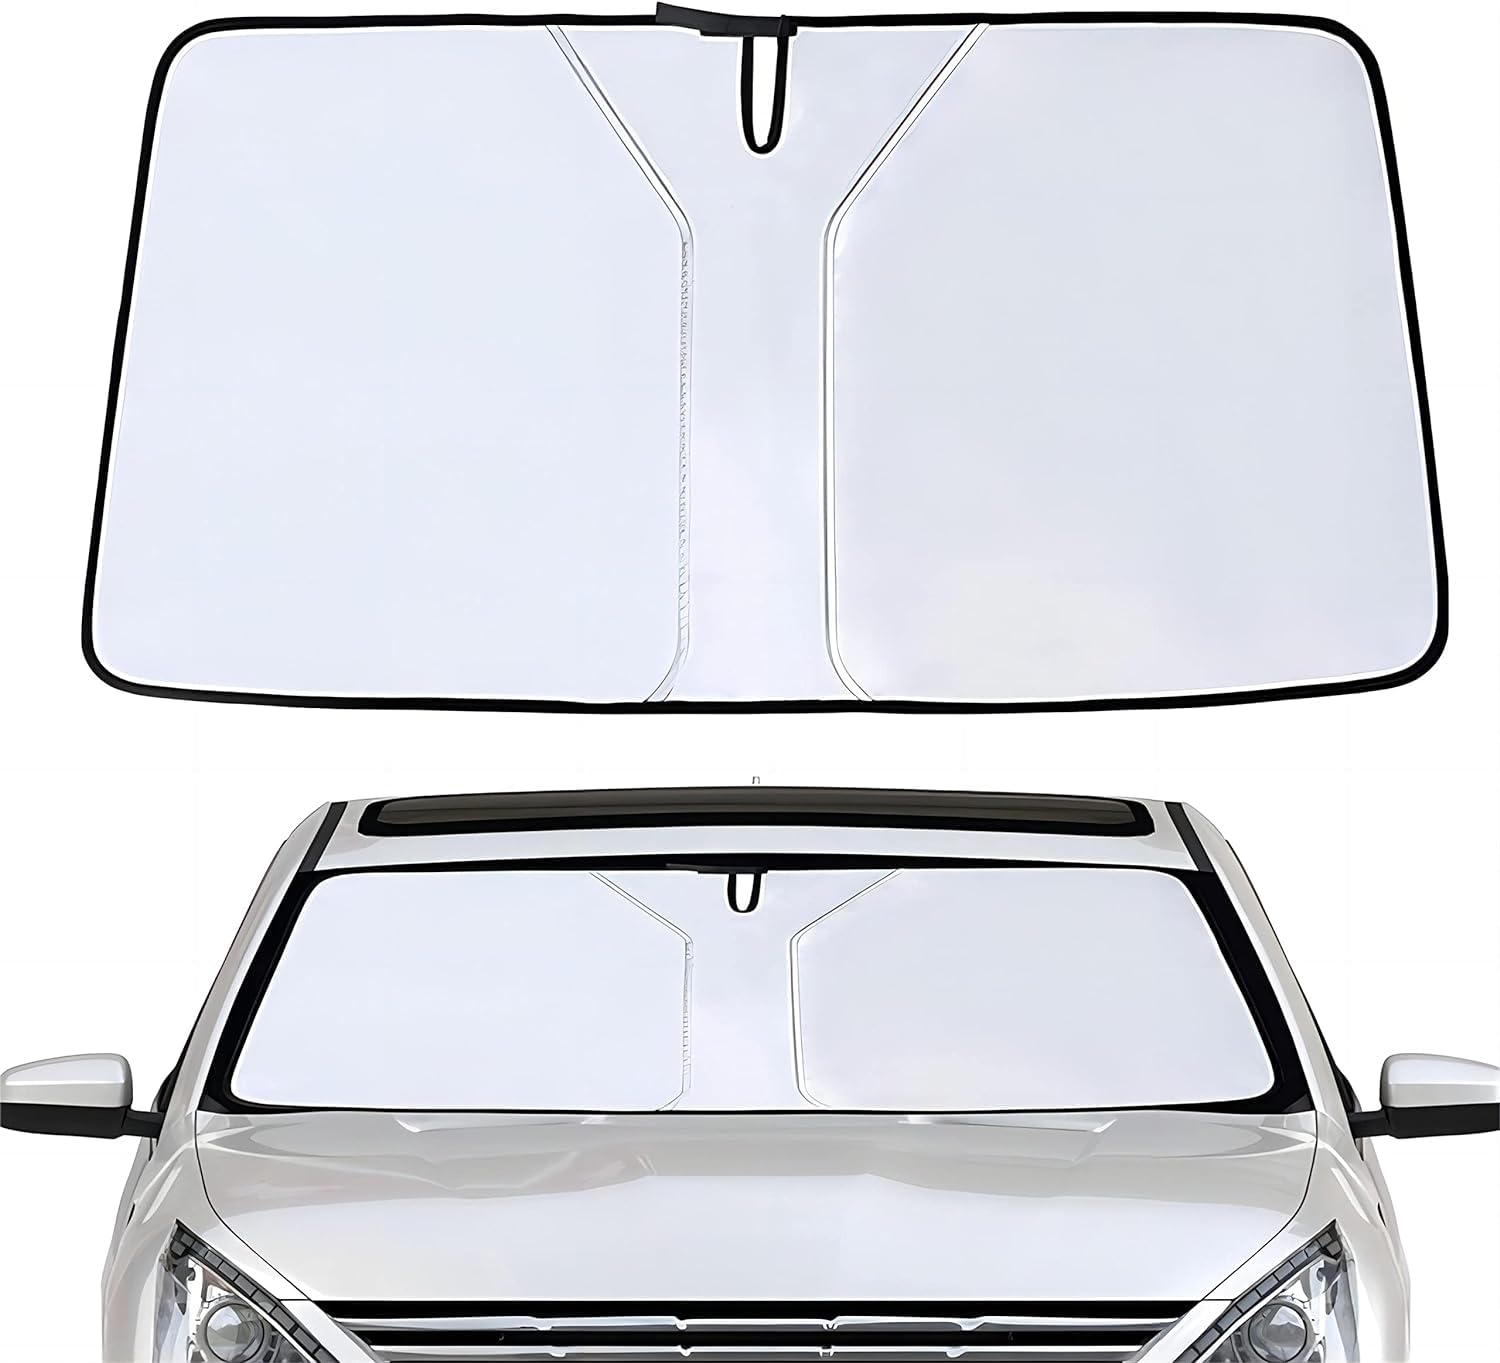 Sonnenschutz Auto Frontscheibe für Mitsubishi pajero Sport 2010 2011 2012 2013 2014 2015, Windschutzscheibe Sonnenschutz Faltbare UV-Schutz Auto Zubehör,Silver von UUJYSEXW